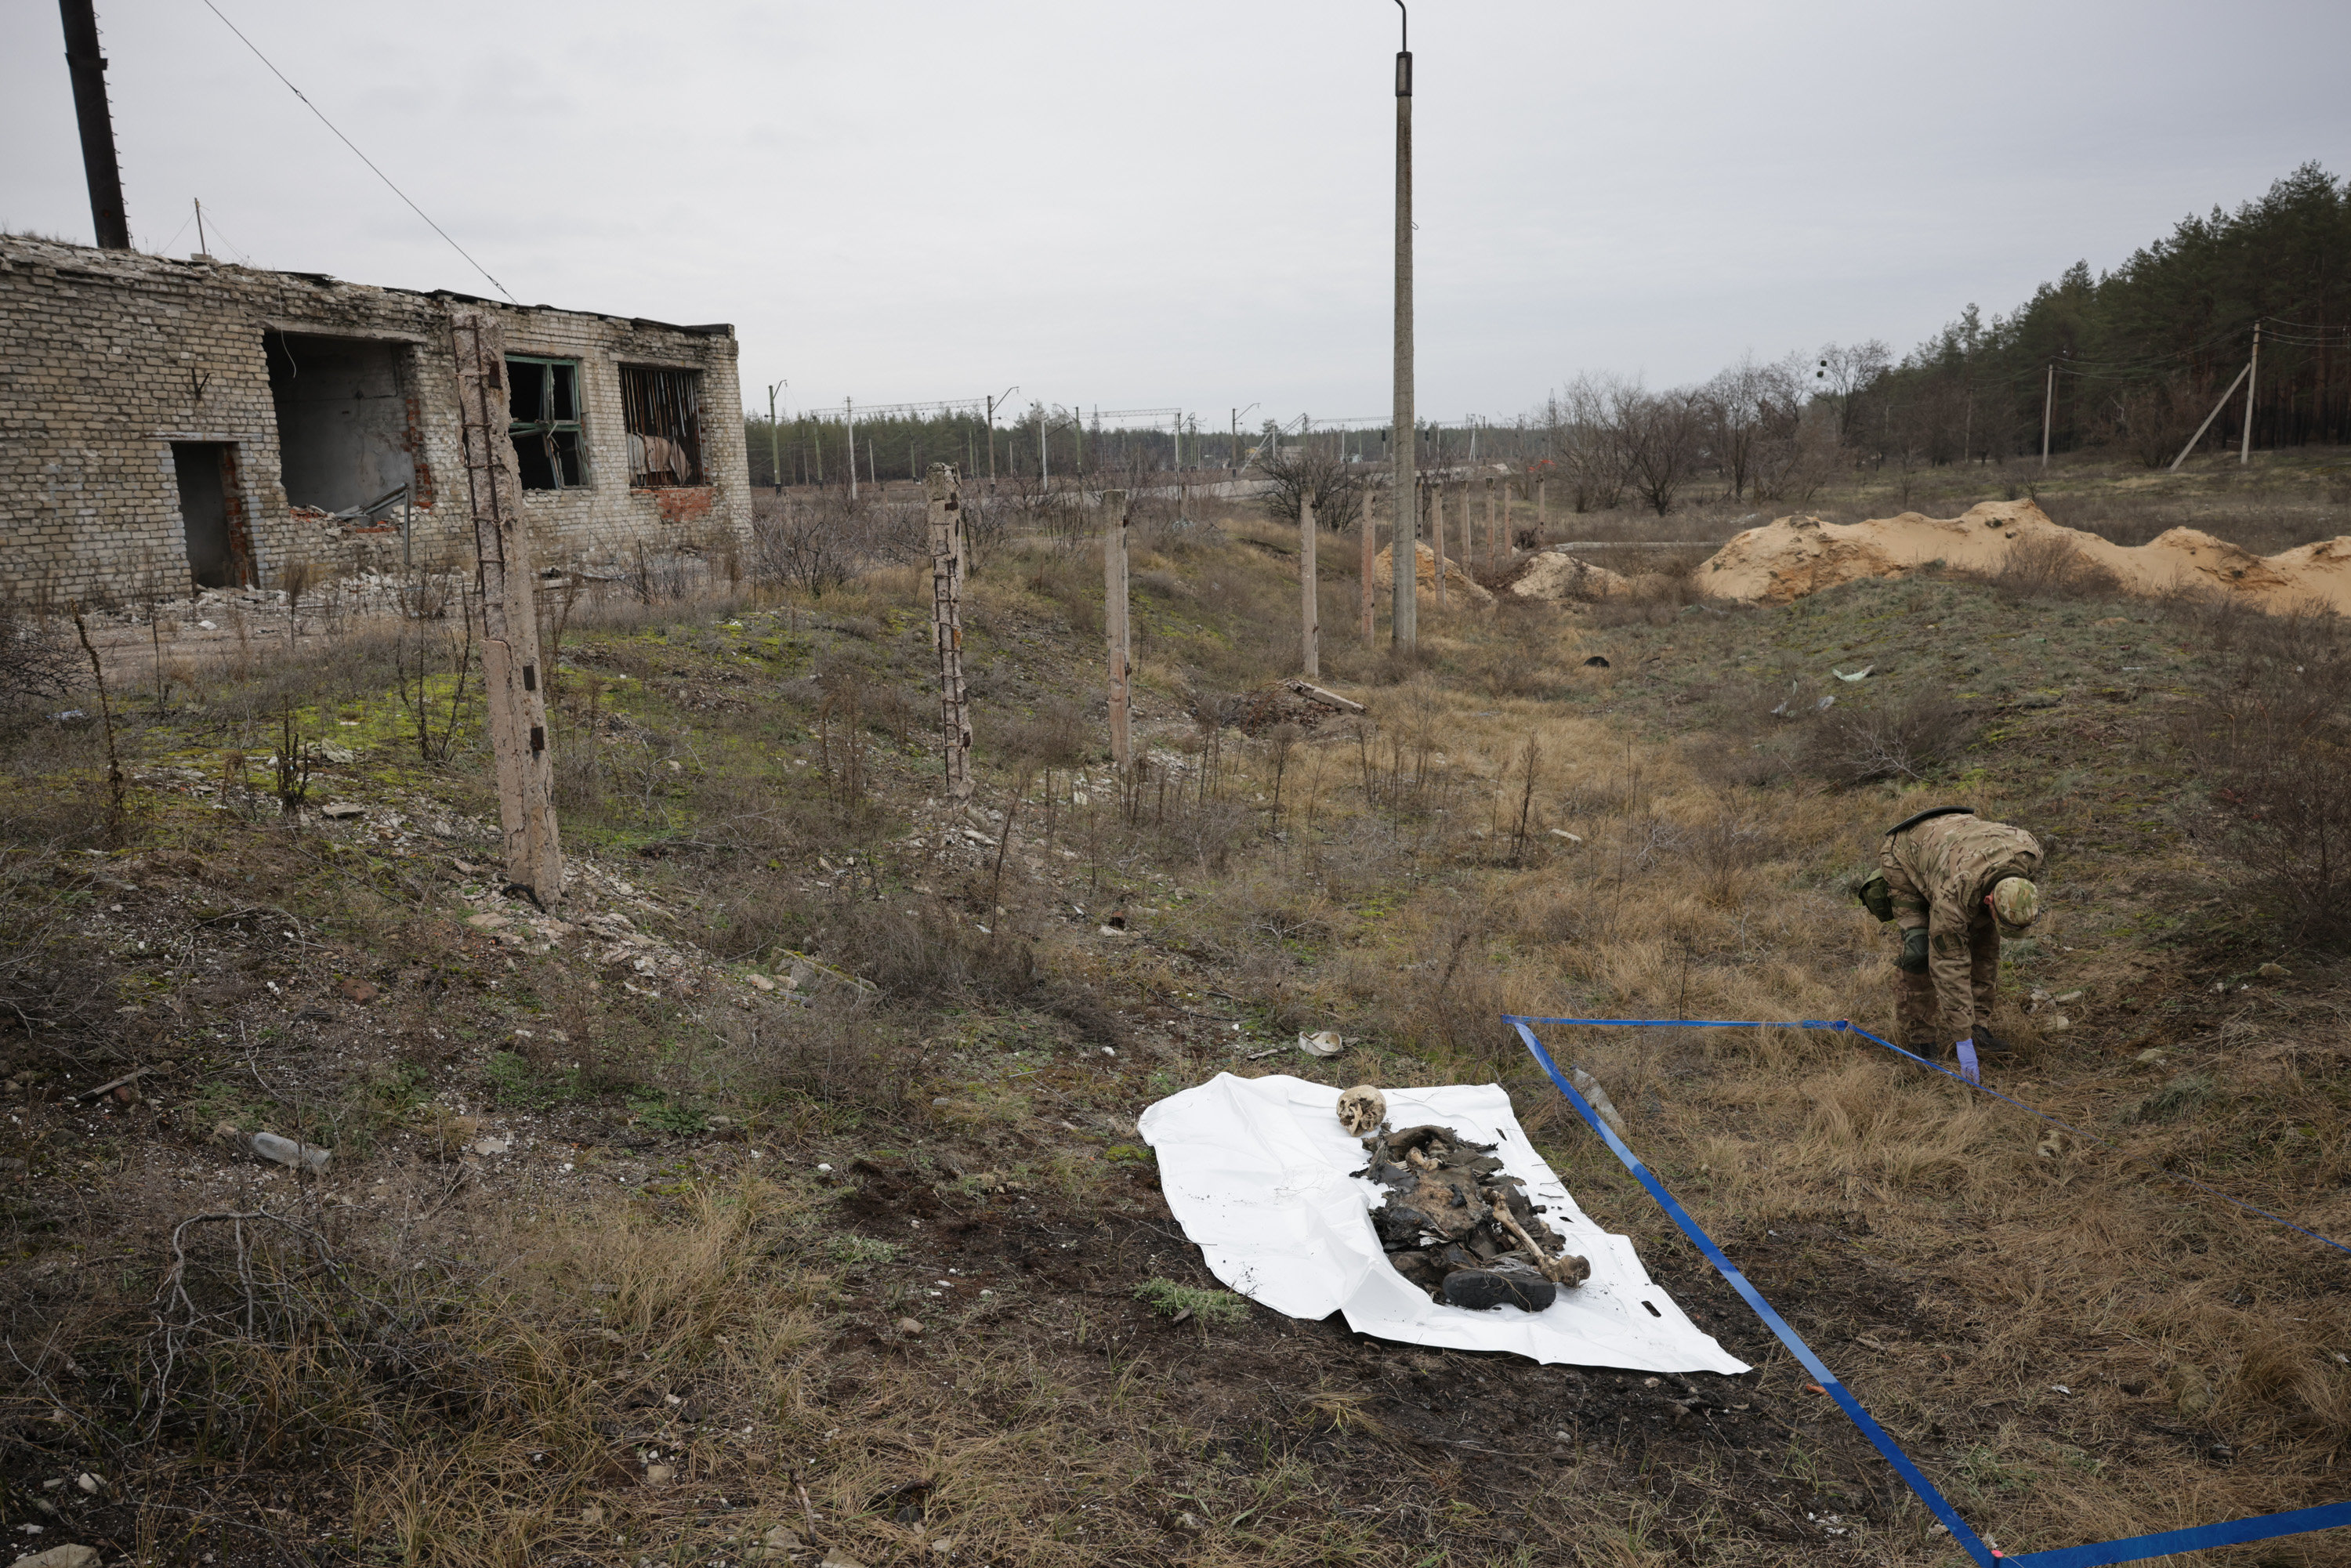 Sviatohirsk (Ukraine), le 21 décembre 2022. Les membres de l'ONG Tulipe noire récupèrent les corps de soldats tués au combat dans cette région de l'Est de l'Ukraine récemment libérée de l'occupation russe. LP/Philippe de Poulpiquet